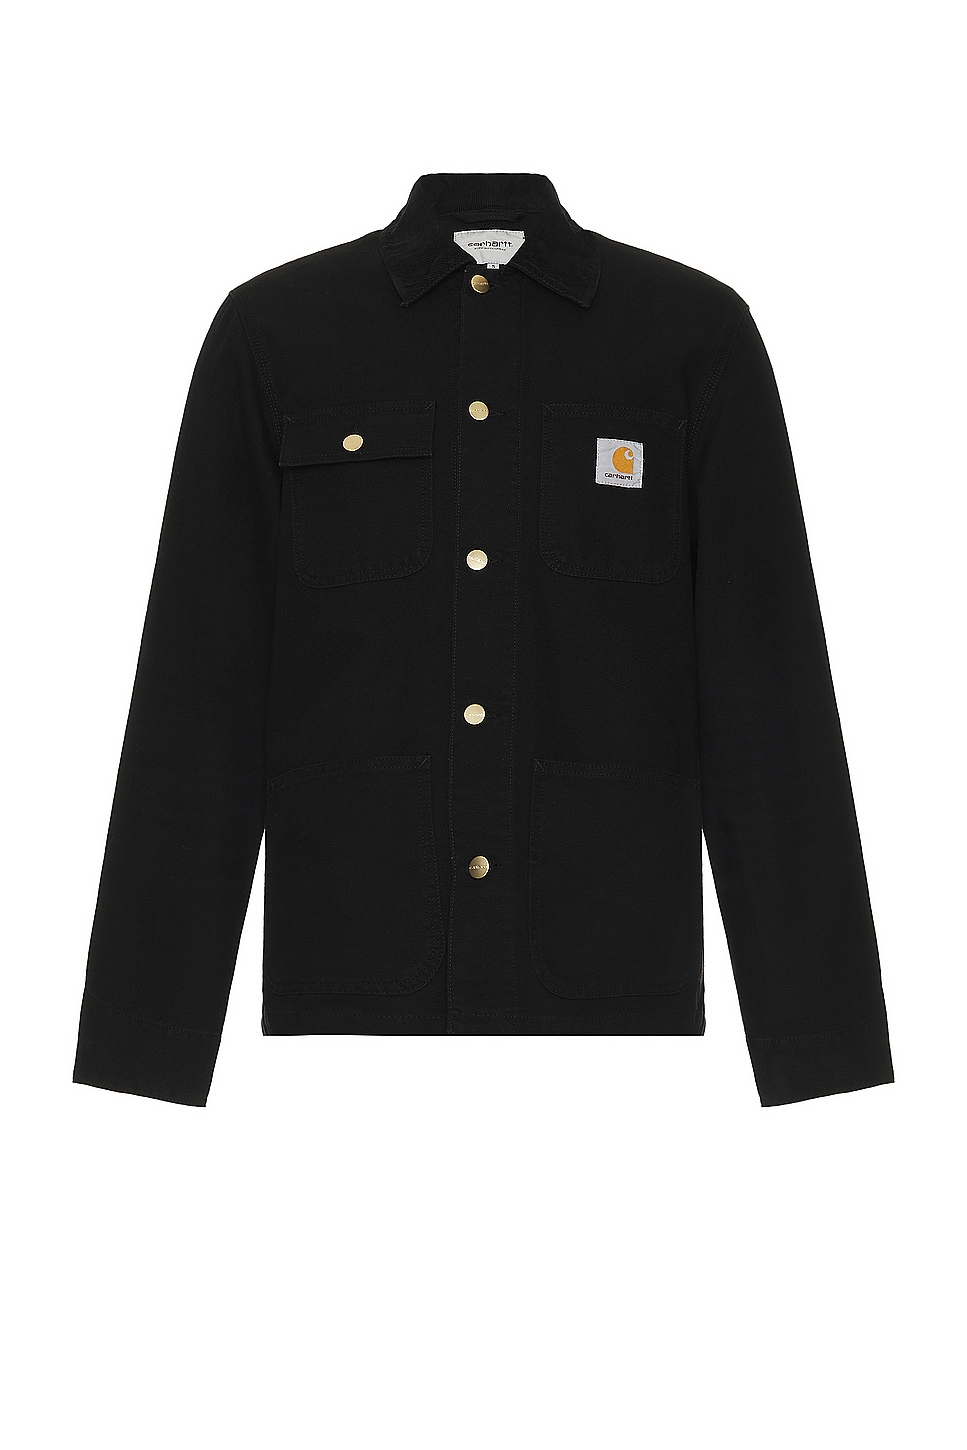 Image 1 of Carhartt WIP Michigan Coat in Black